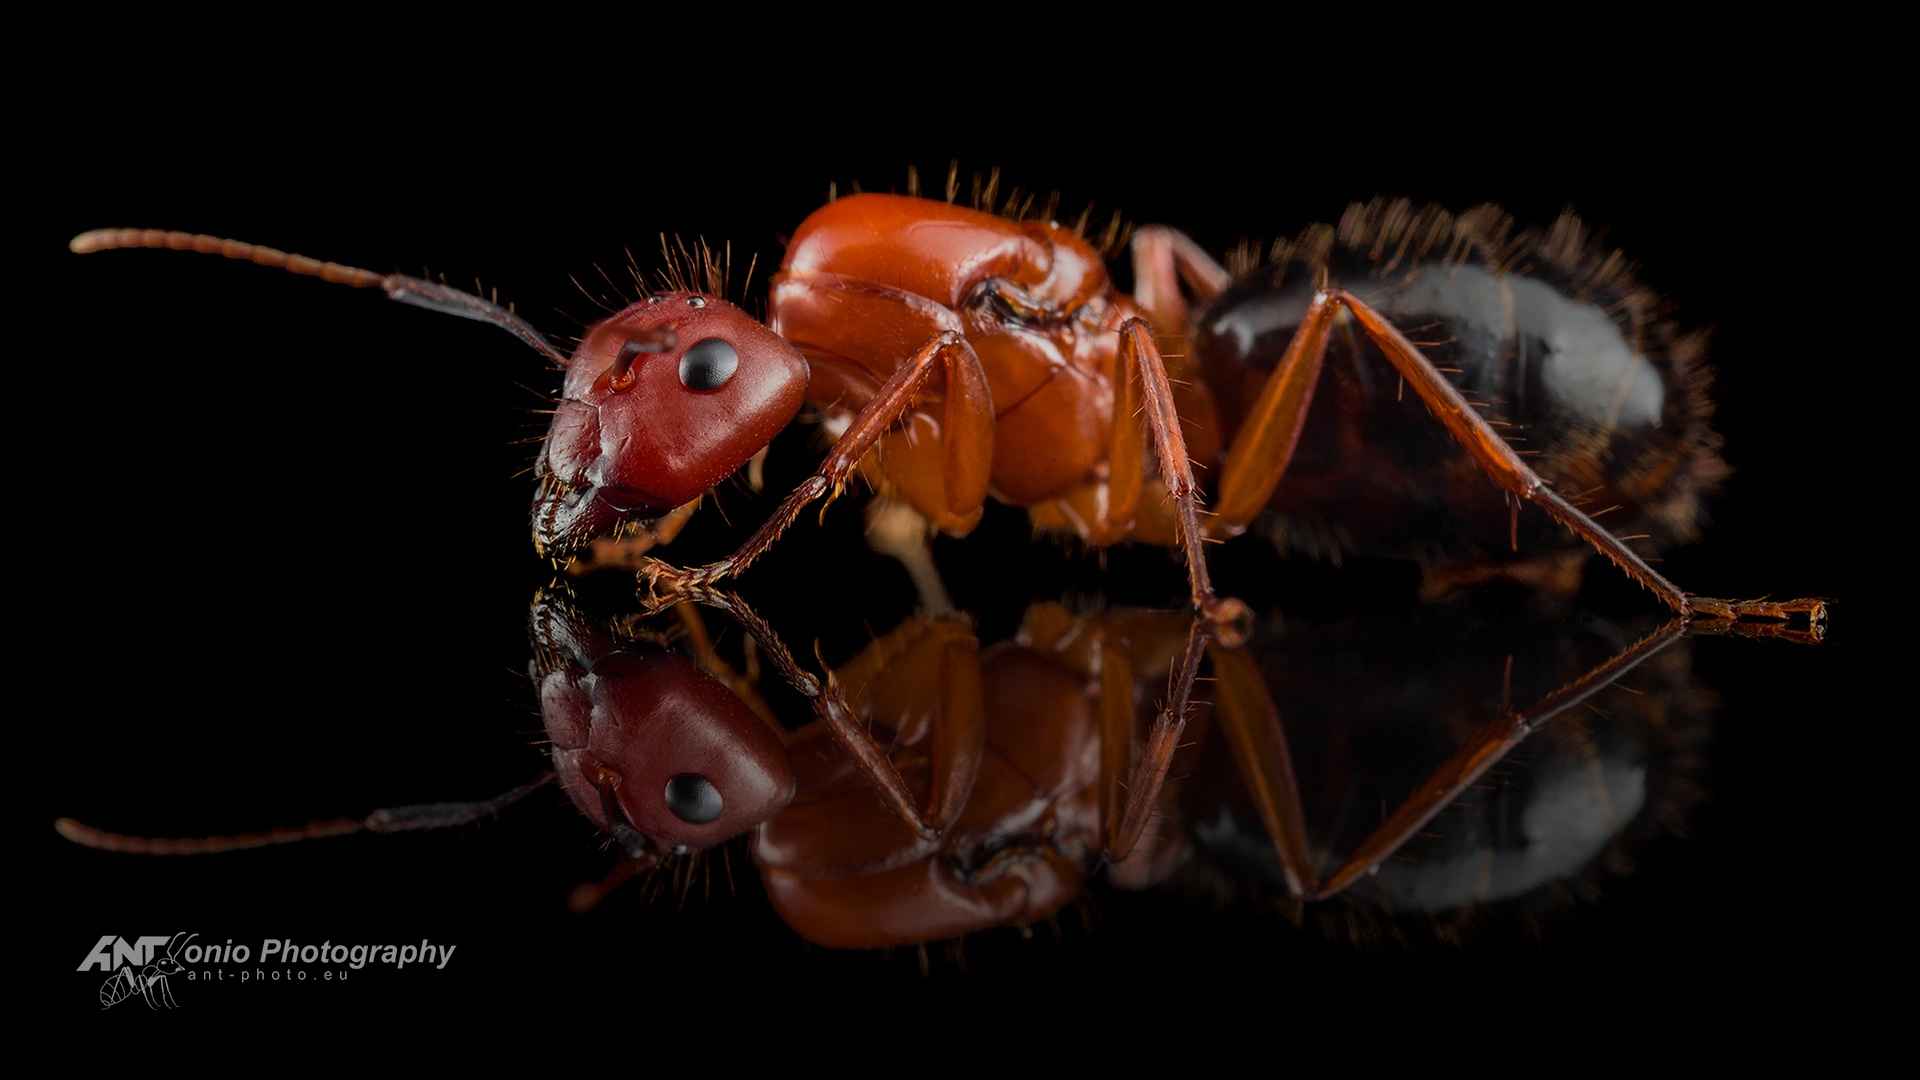 Camponotus floridanus